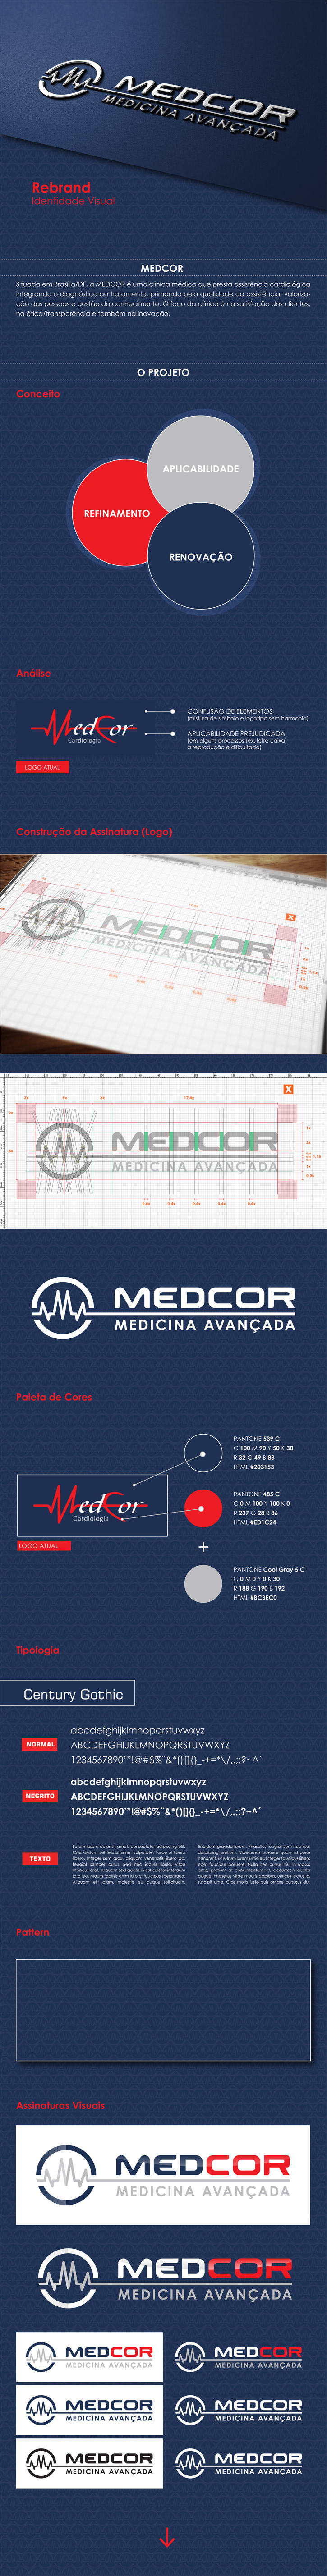 Apresentação Identidade Visual | MEDCOR - Medicina avançada (3)